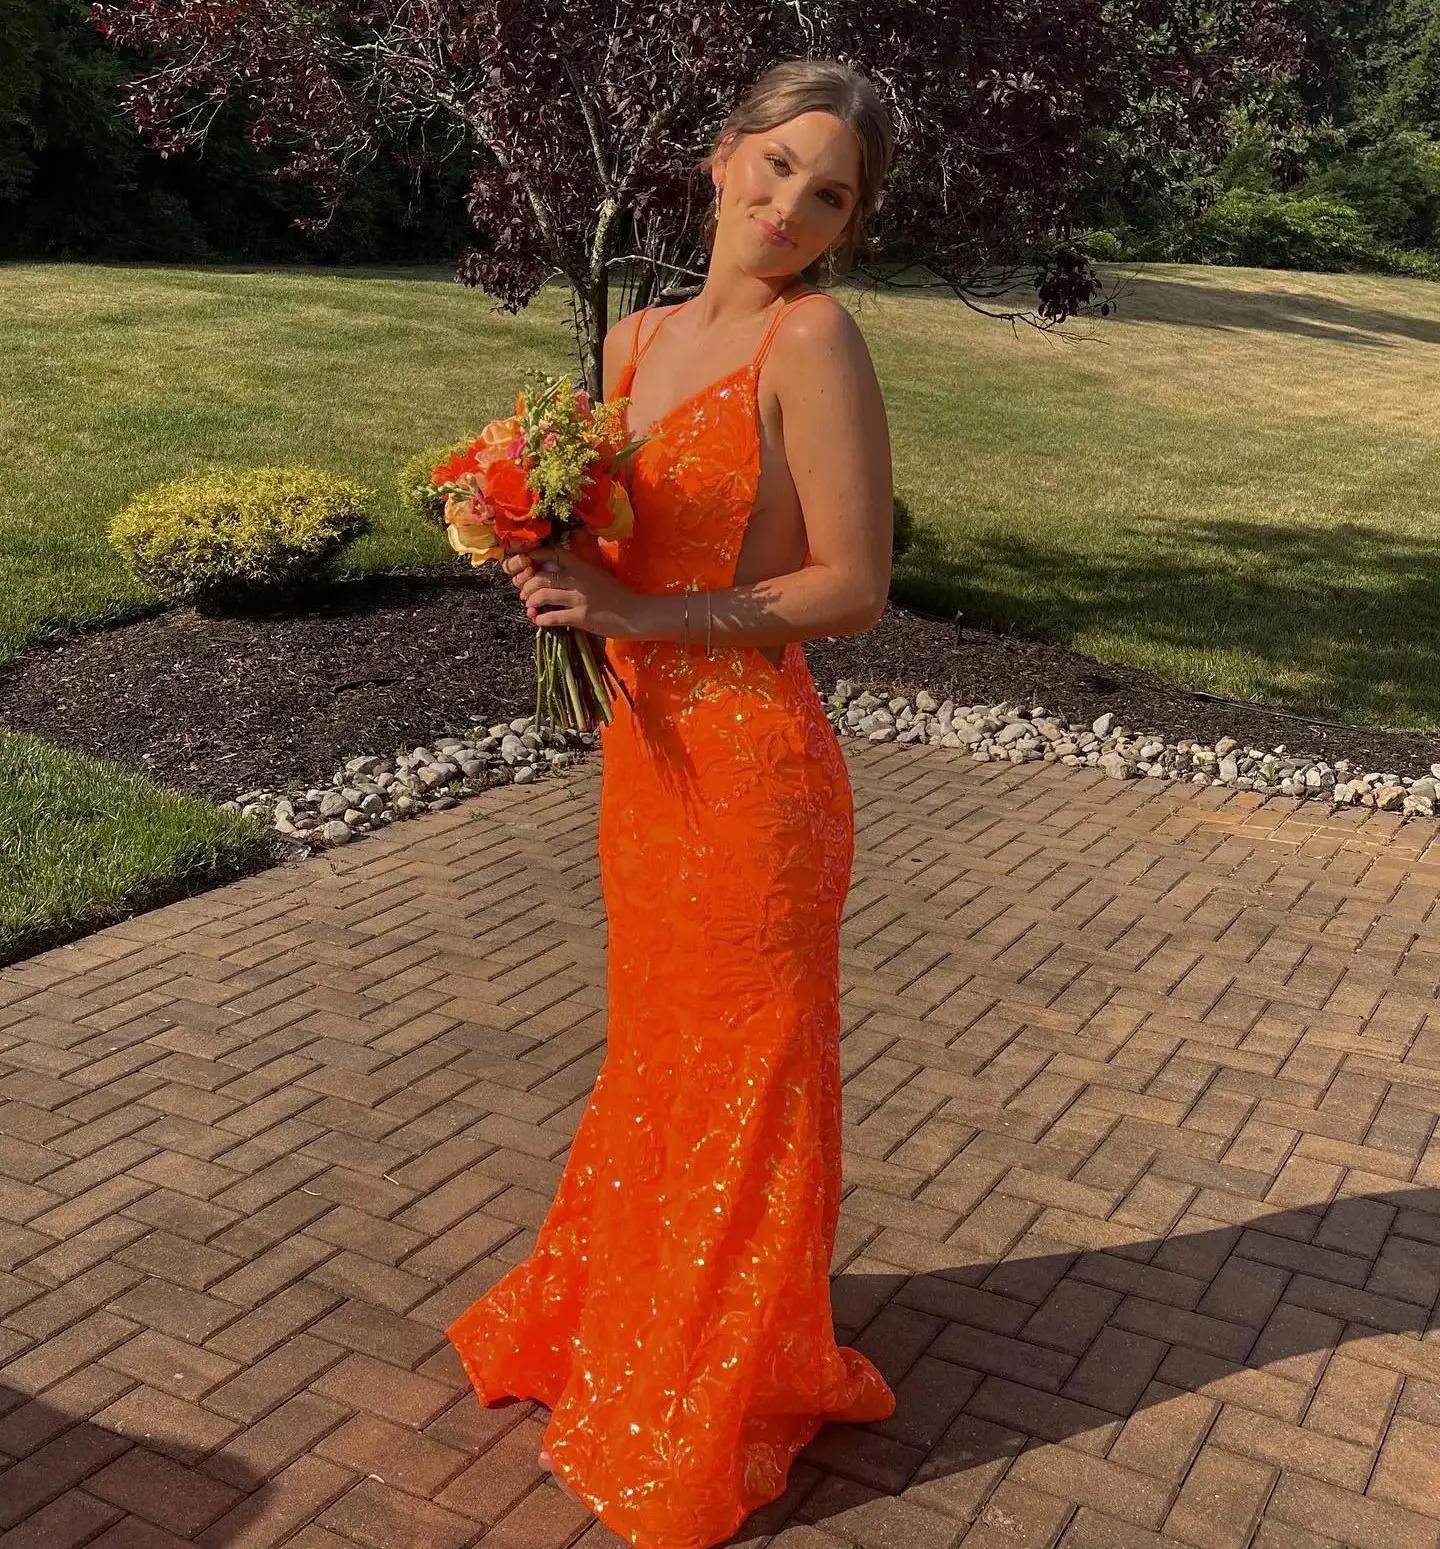 Model wearing a orange gown